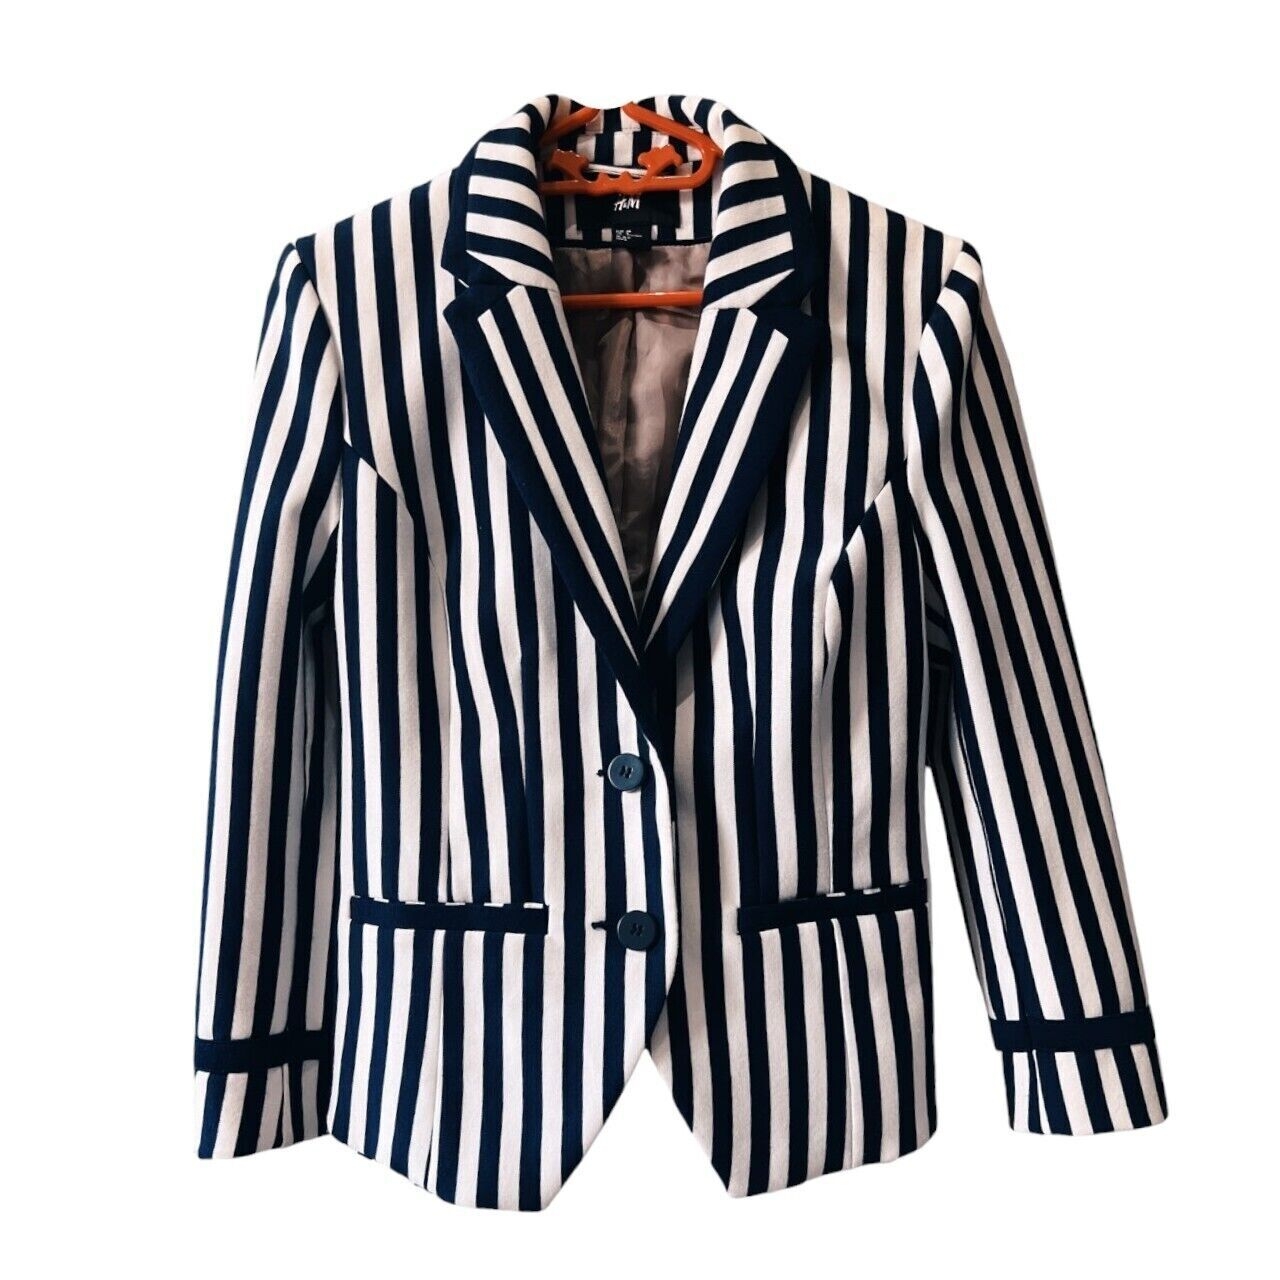 H&M Navy & White Stripes Blazer